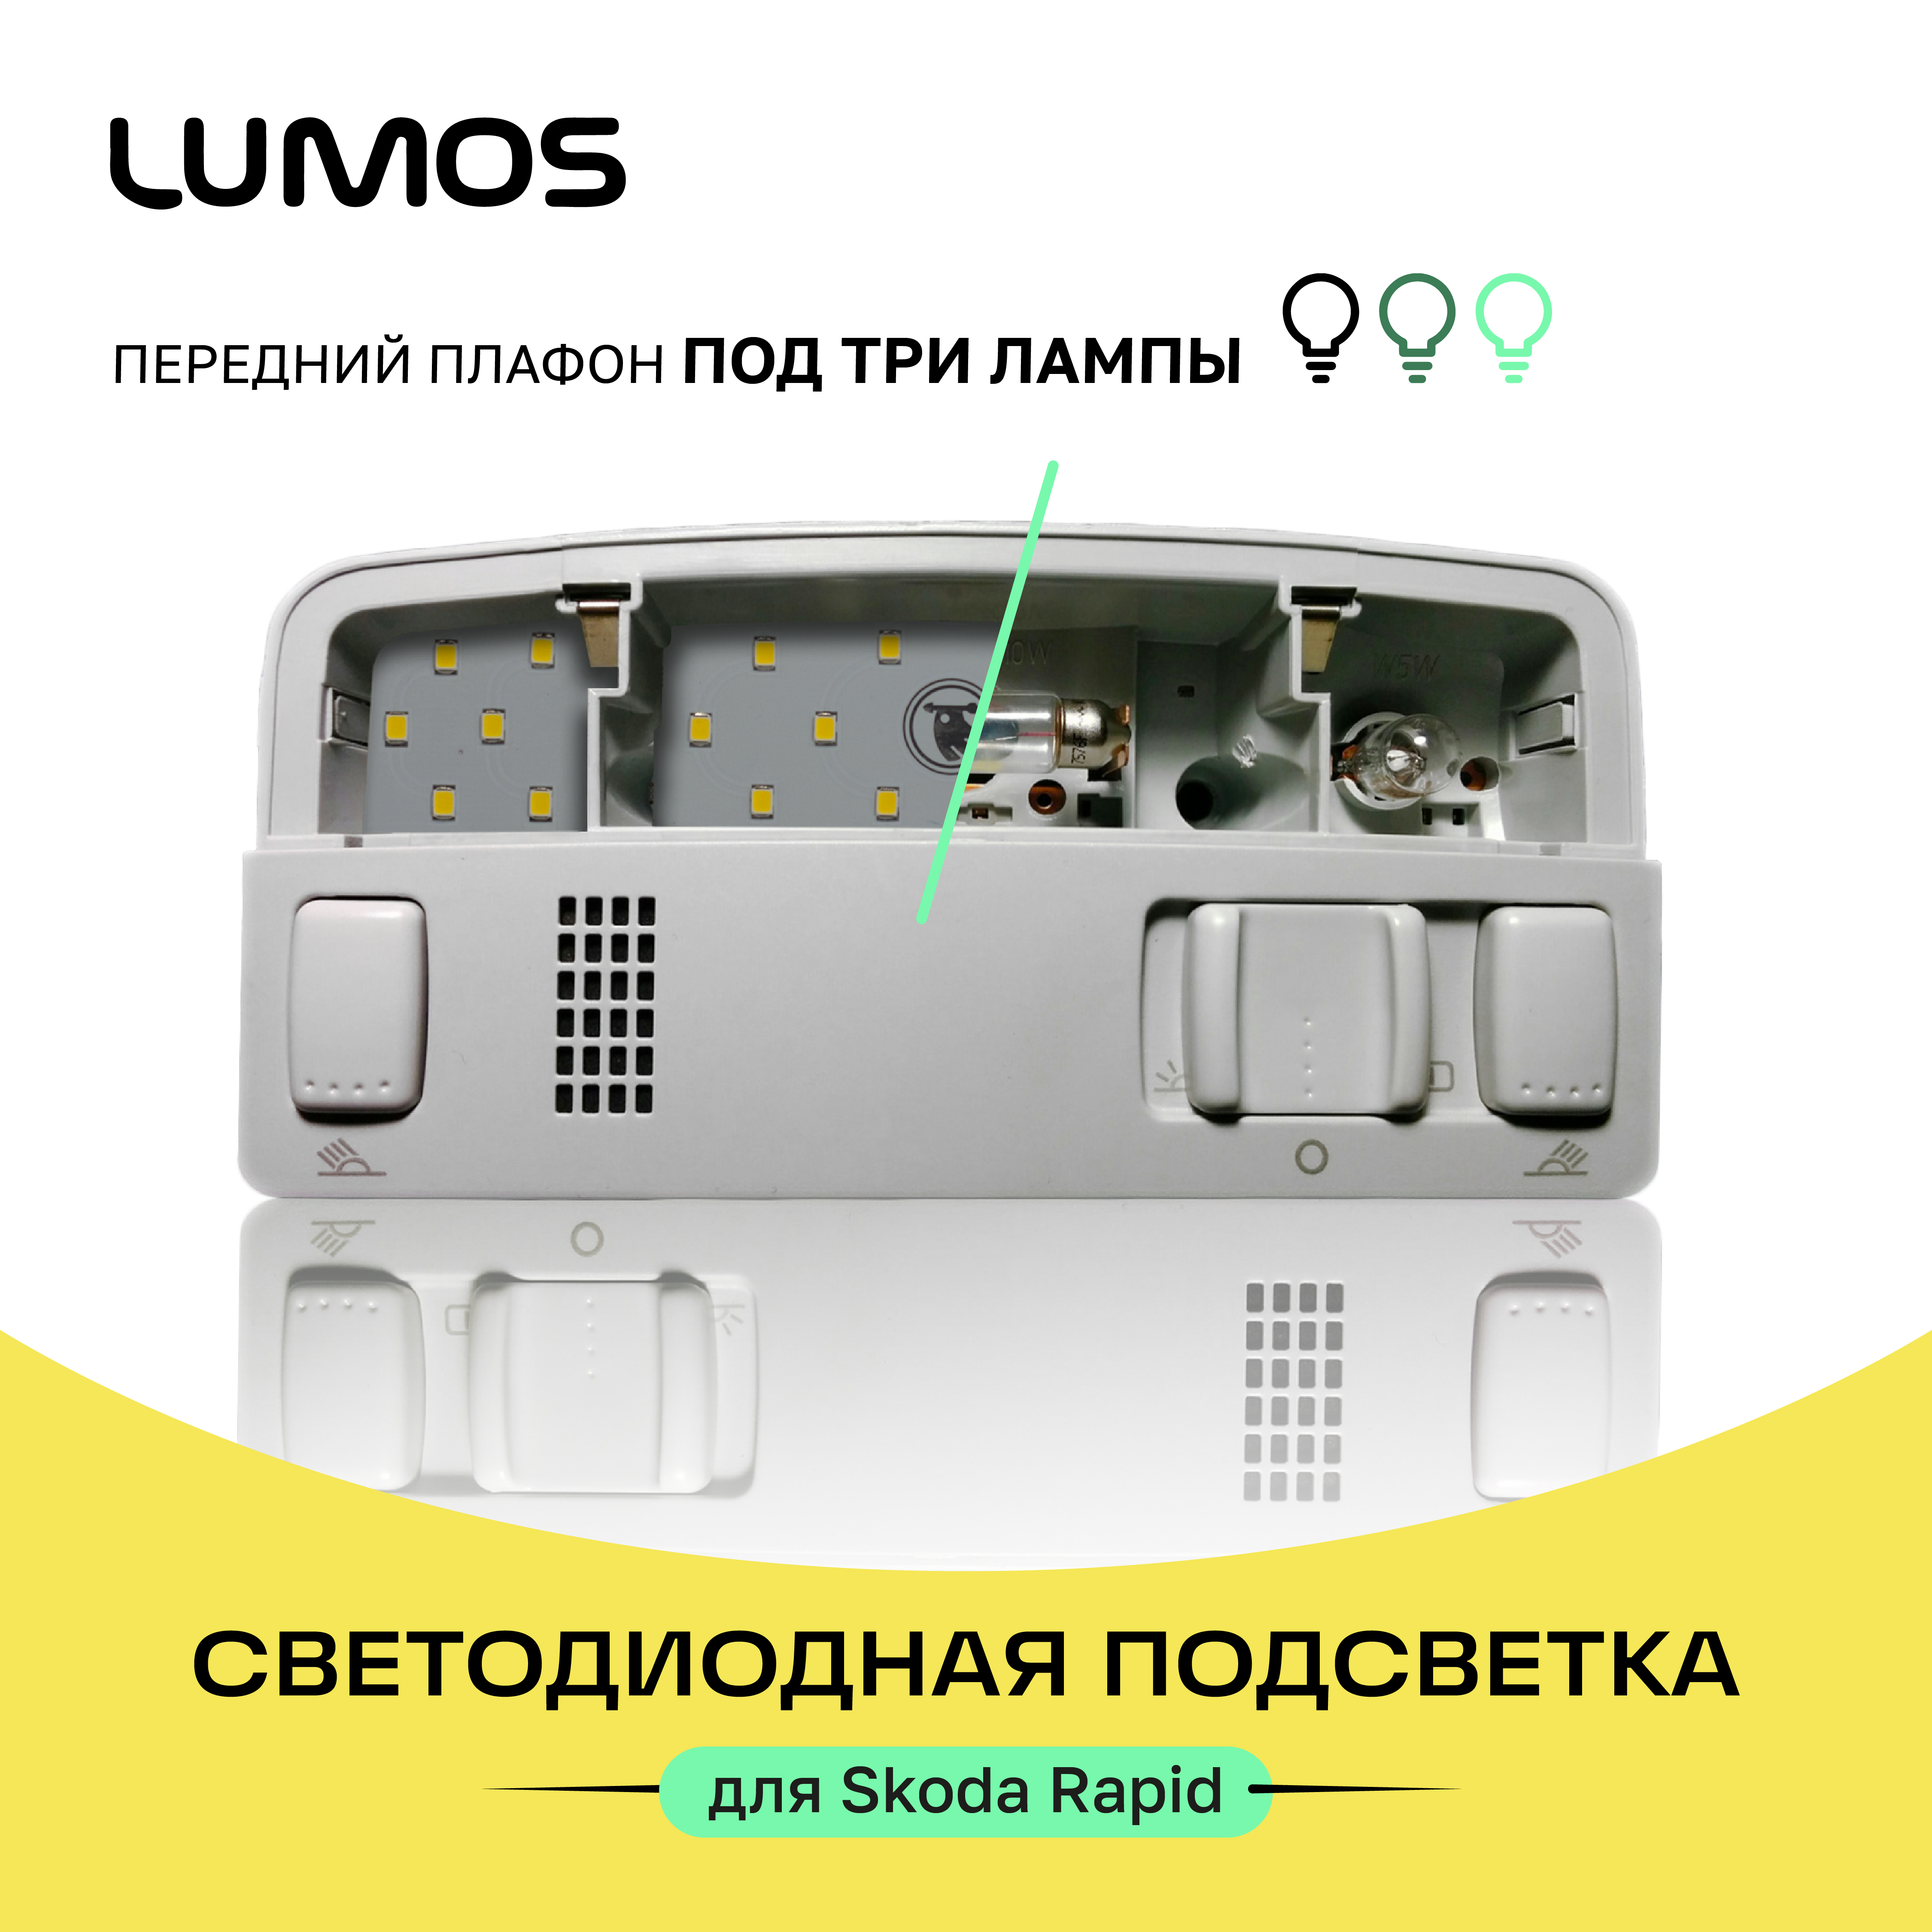 Комплект LED подсветки Skoda Rapid LUMOS 4000К под 3 лампы полный